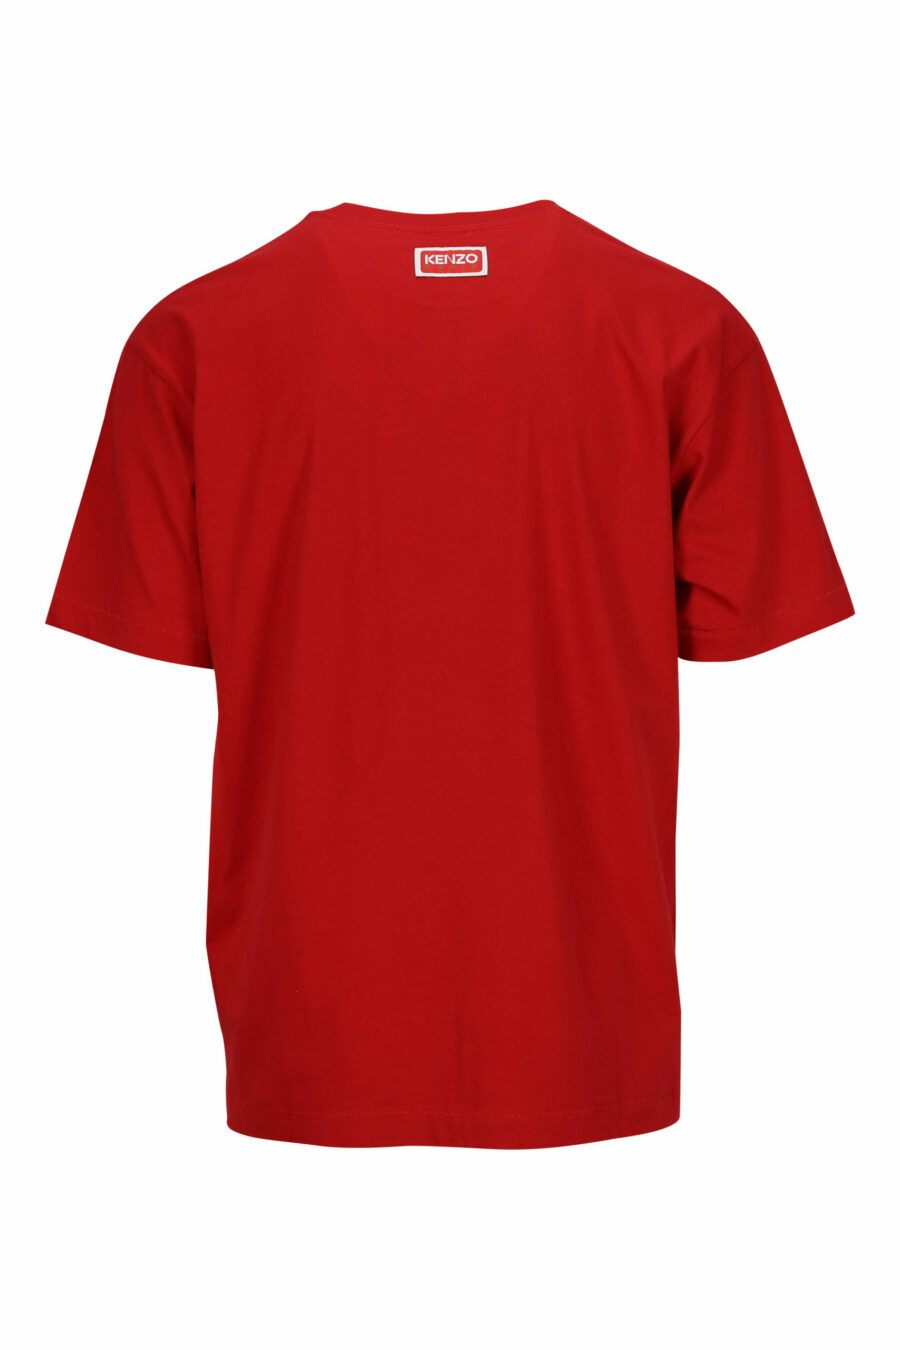 T-shirt rouge surdimensionné avec logo en relief d'un grand éléphant - 3612230568877 1 scaled